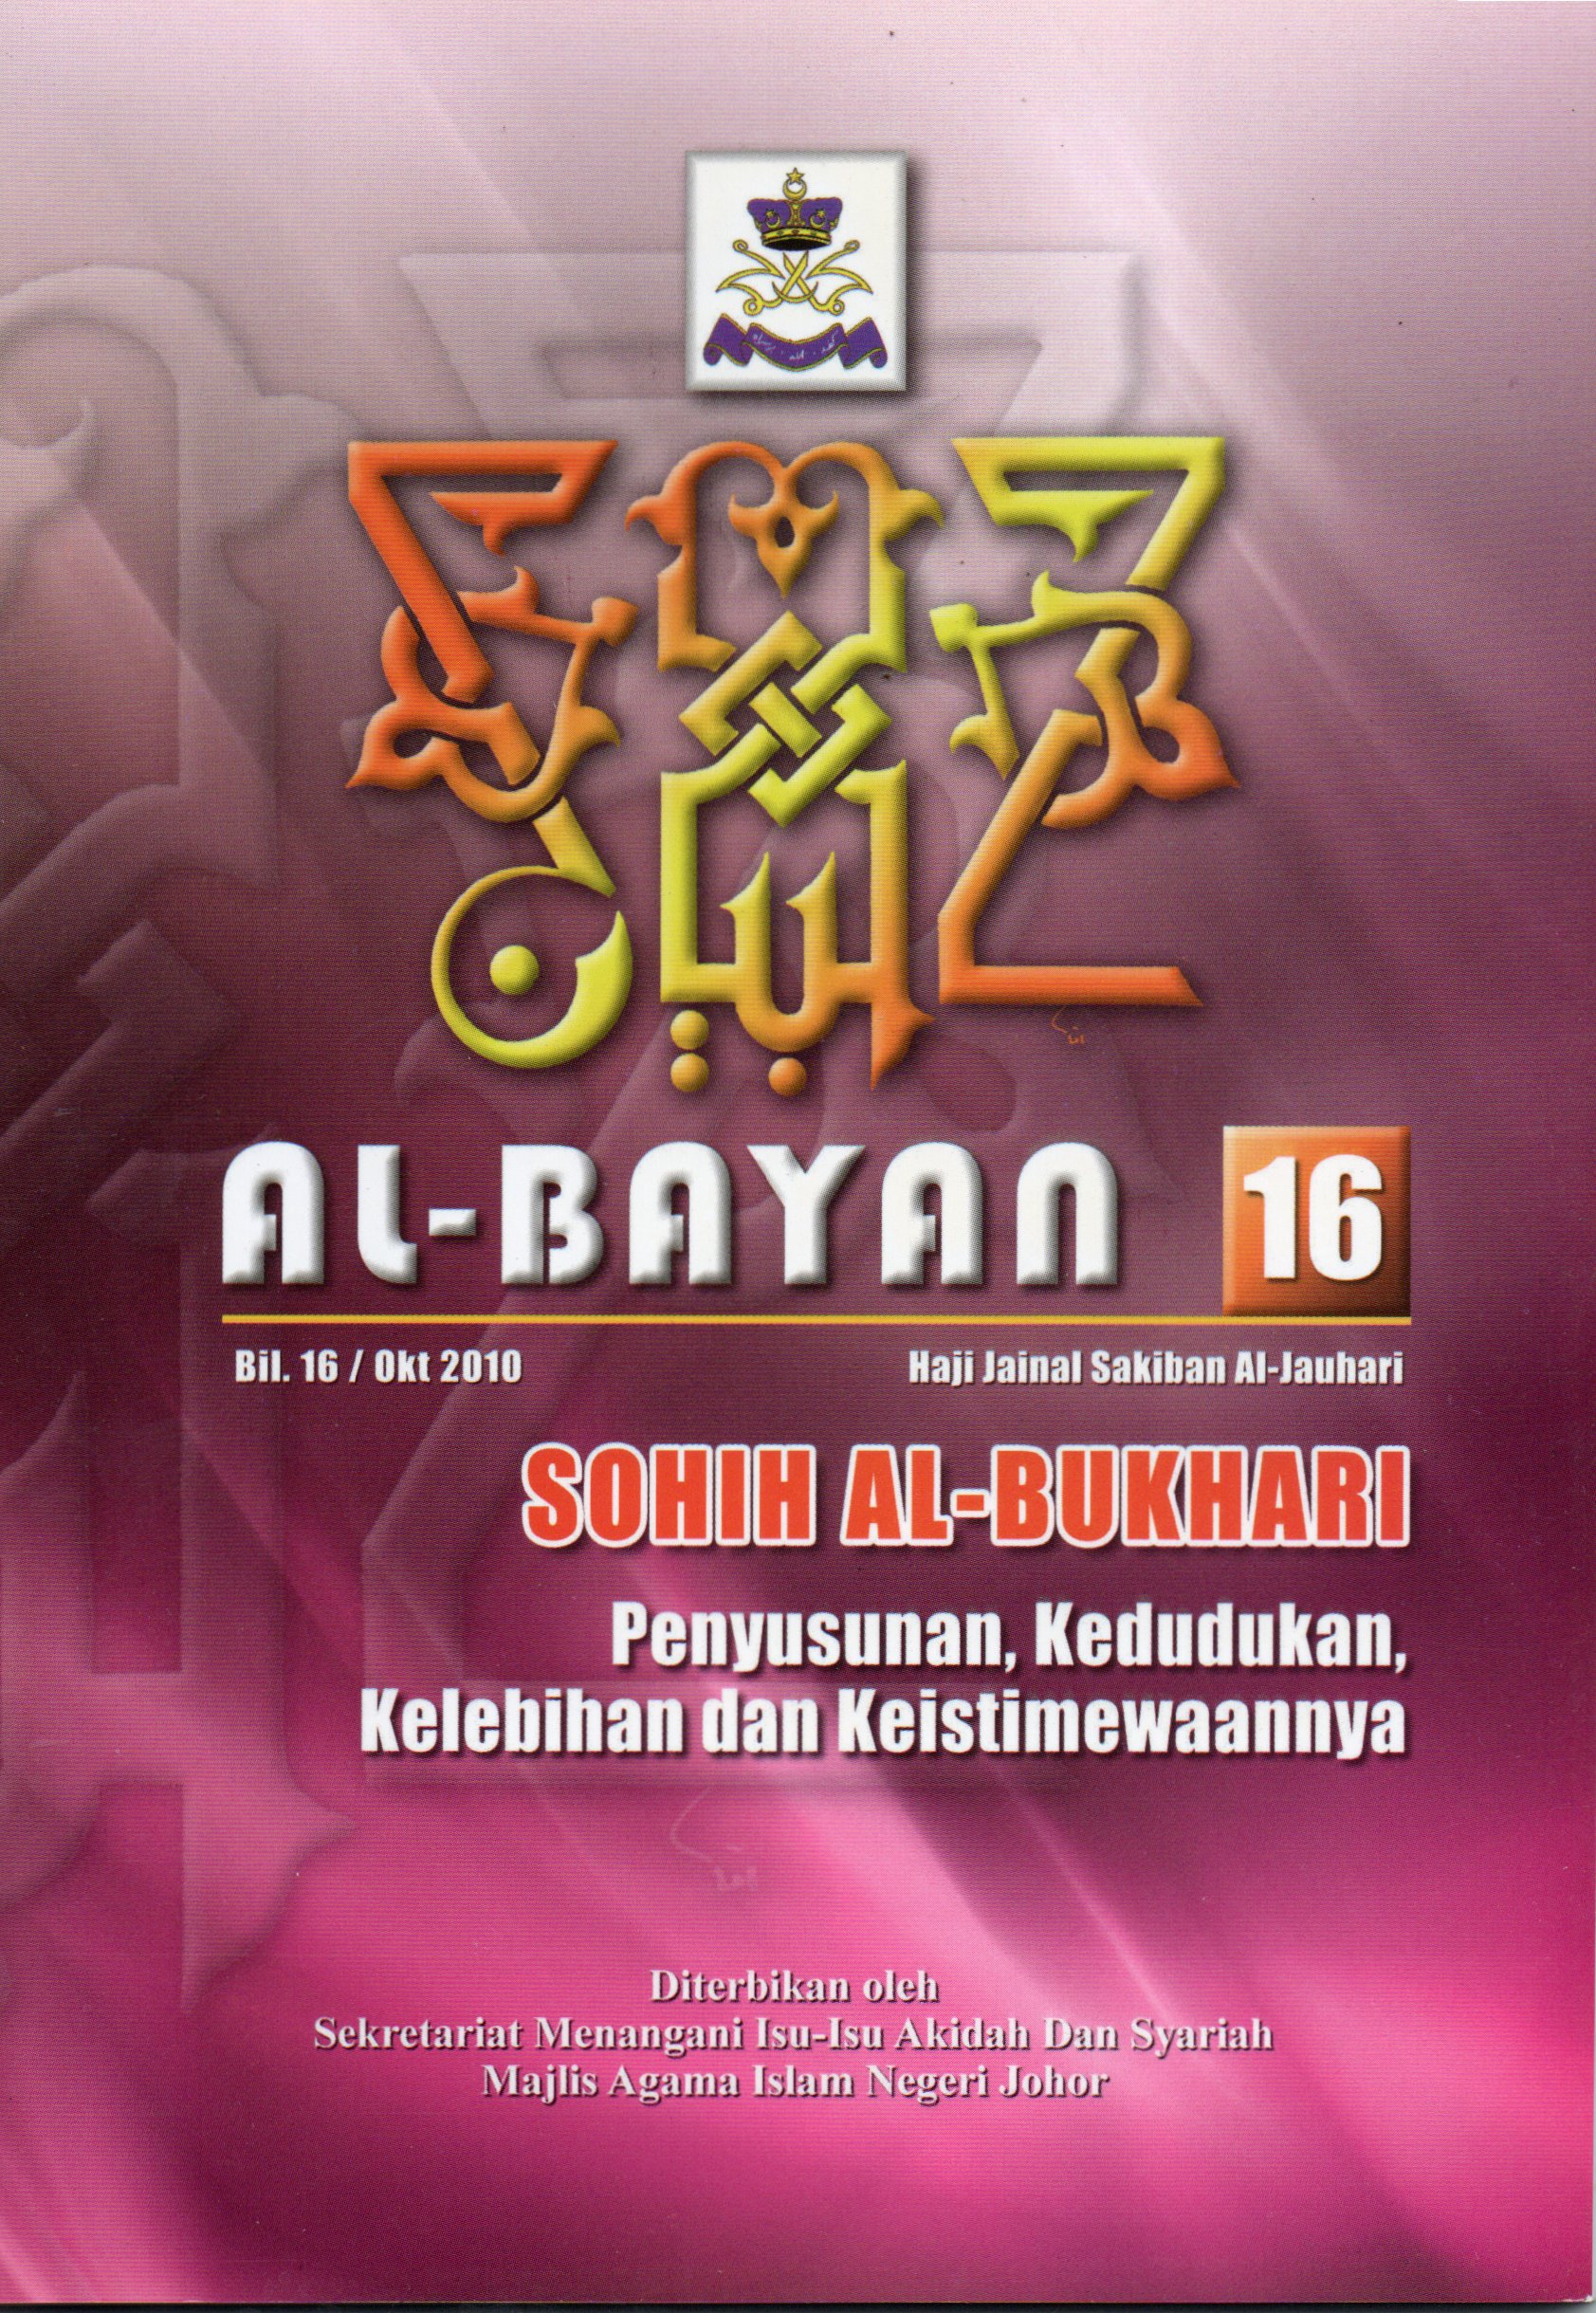 Al-Bayan 16: Sohih Al-Bukhari, penyusunan, kedudukan, kelebihan dan keistimewaannya